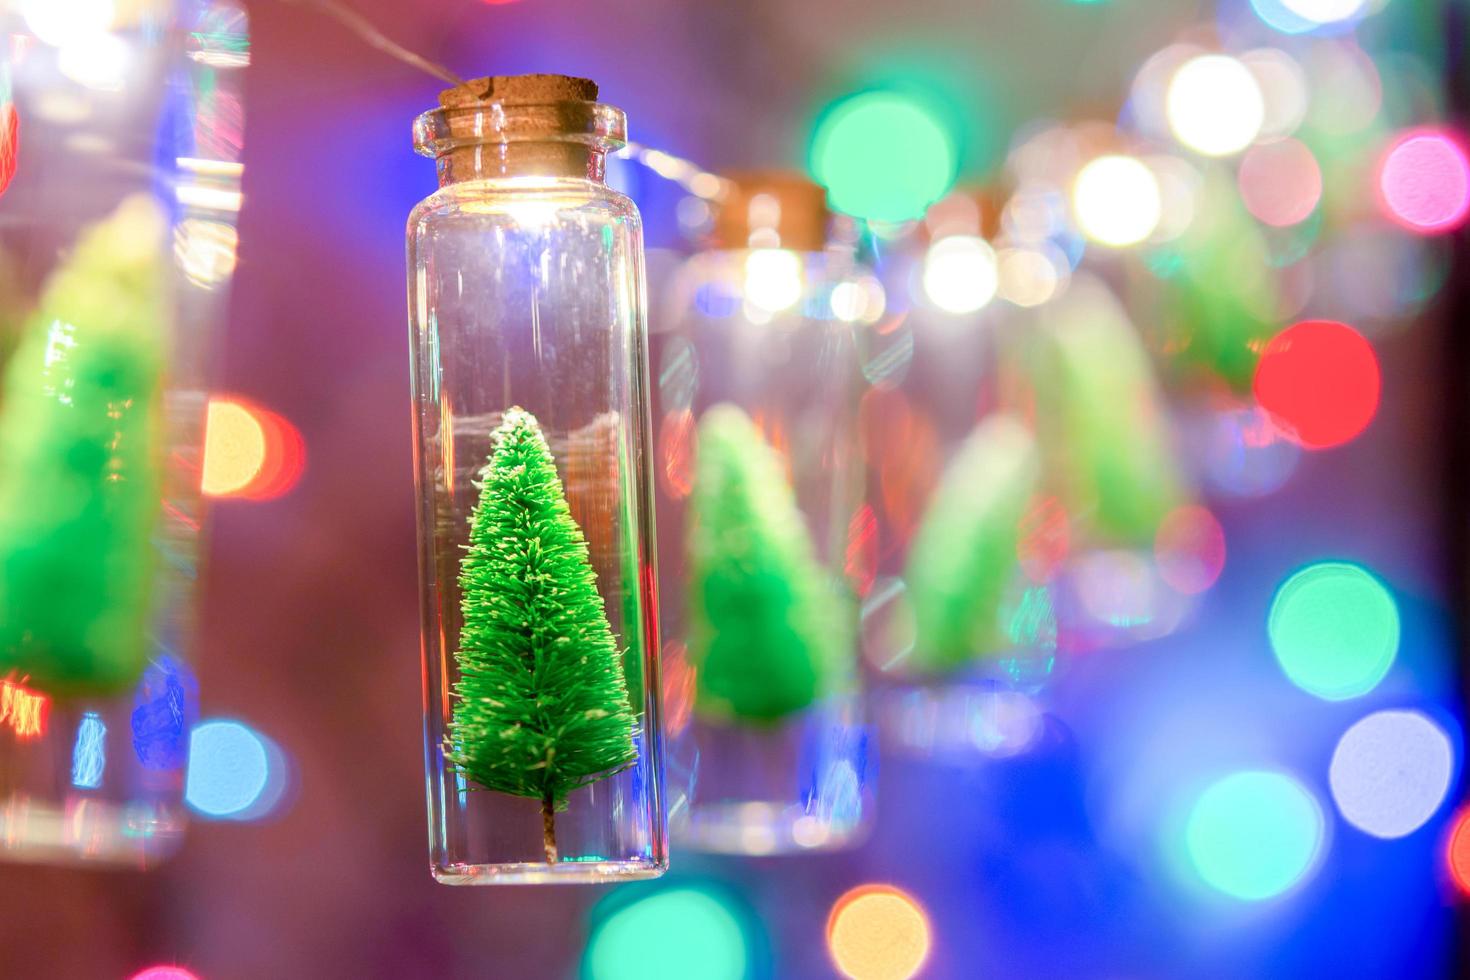 vrolijk kerstfeest en een gelukkig nieuwjaar. hangende kleine kerstboom in glazen pot op pijnboomtakken kerstboomslinger en ornamenten over abstracte bokeh foto